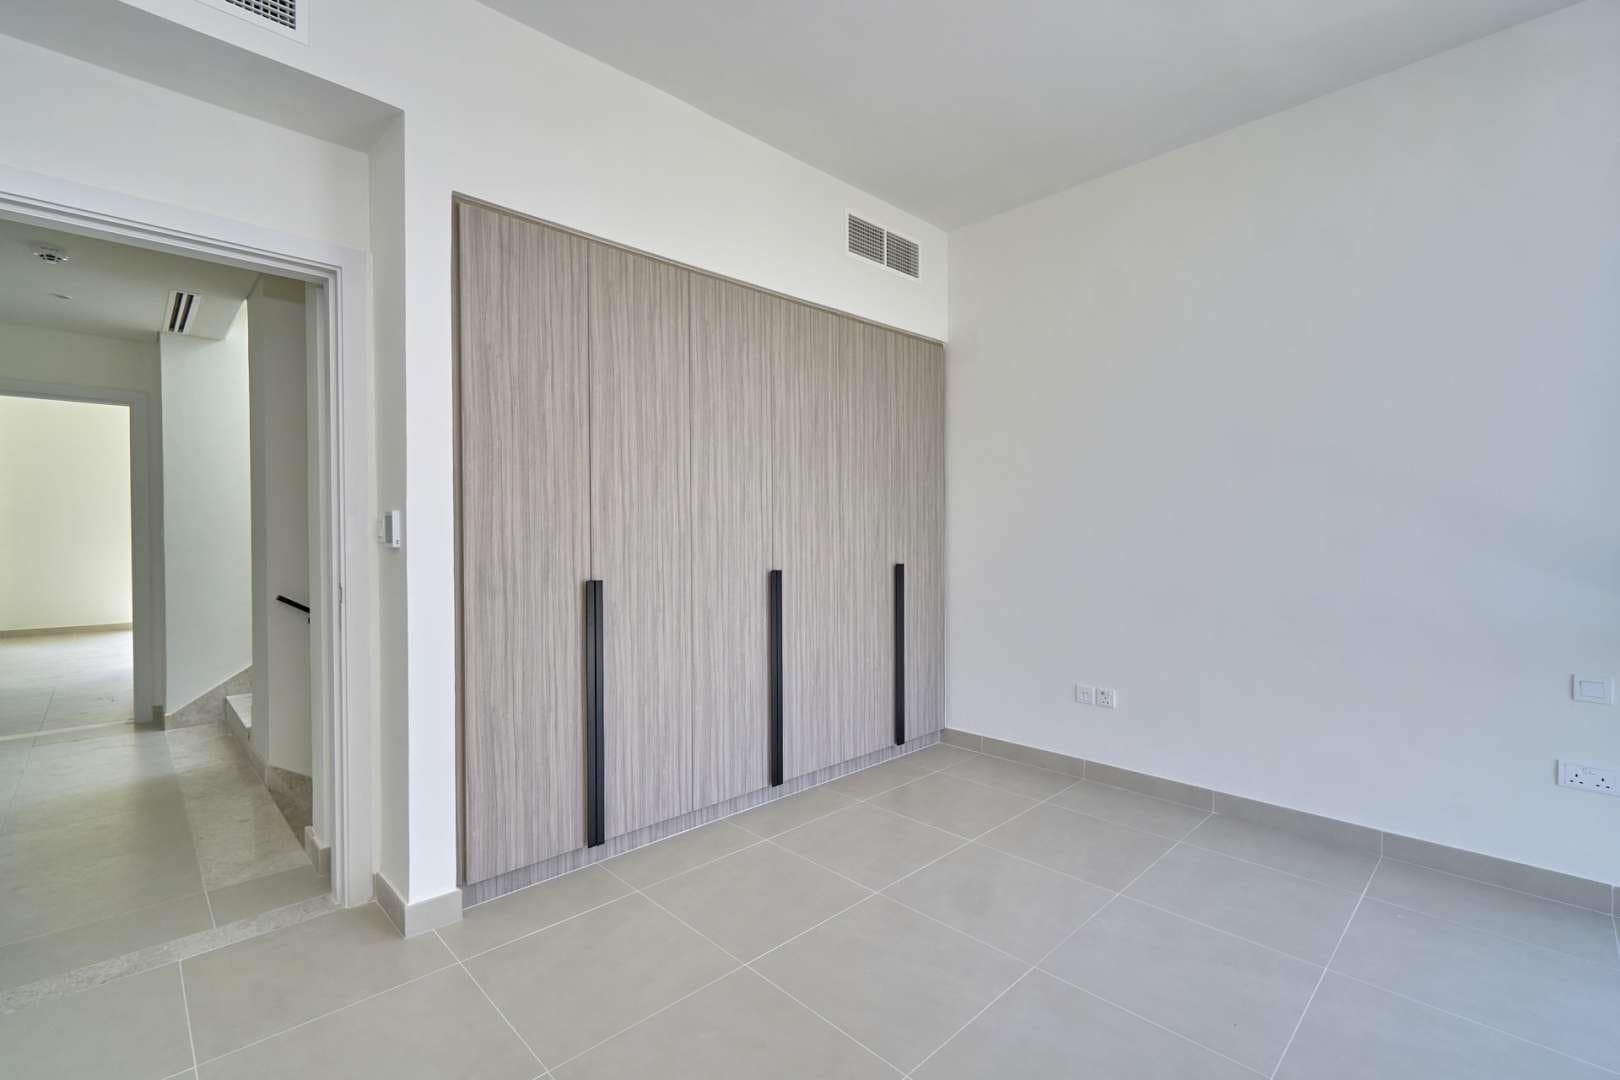 3 Bedroom Villa For Rent Club Villas At Dubai Hills Lp10558 2dcc07948019ce00.jpg